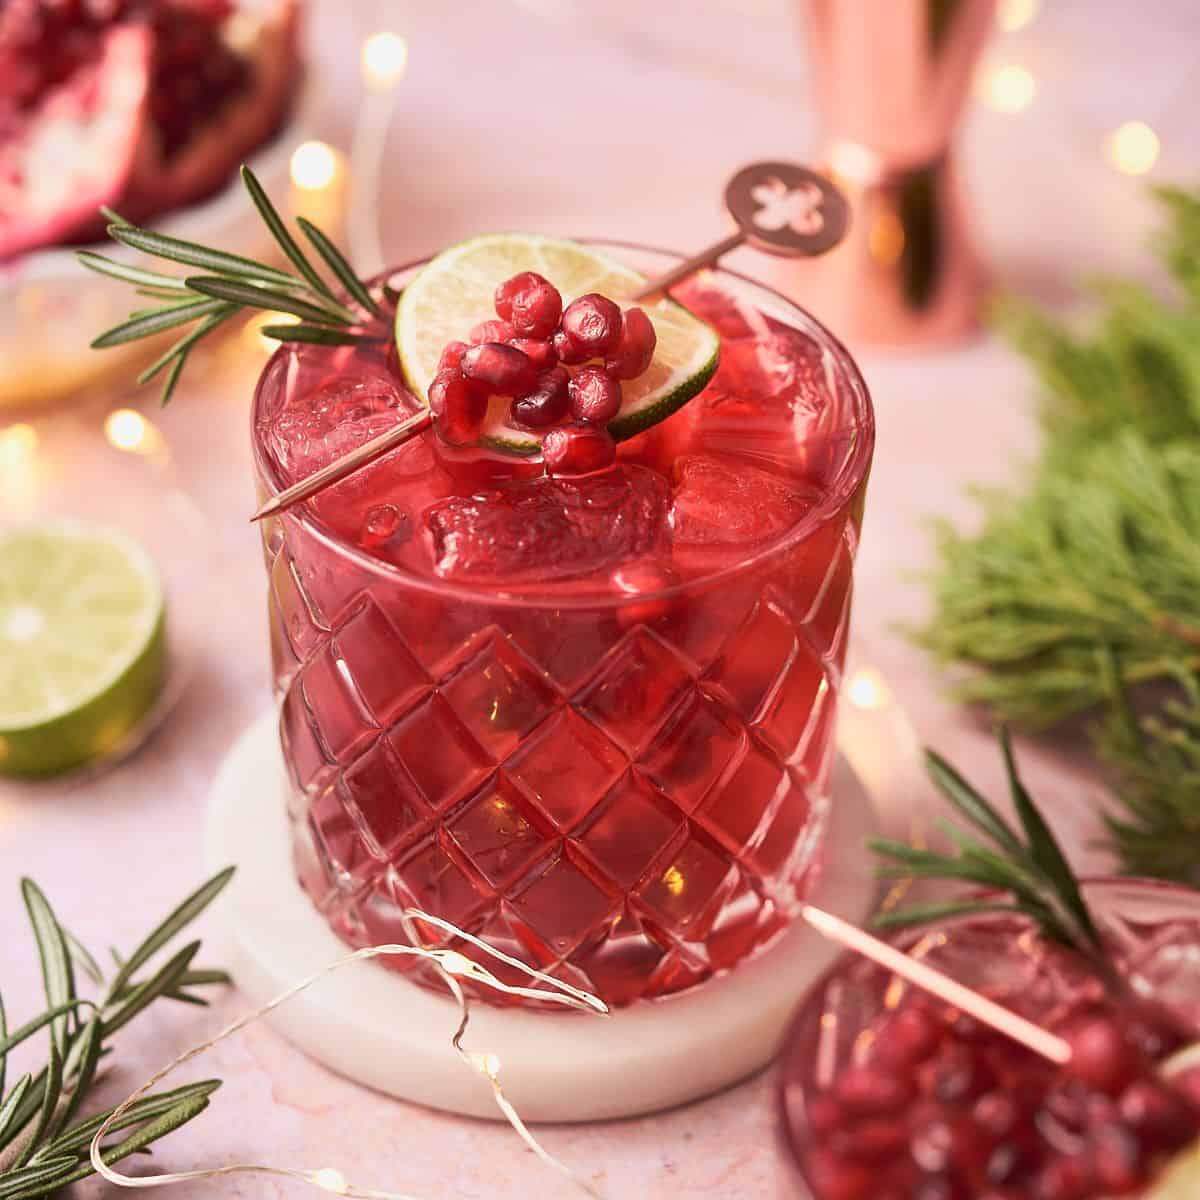 9 Best Gin Glasses - Make Cocktails Come Alive